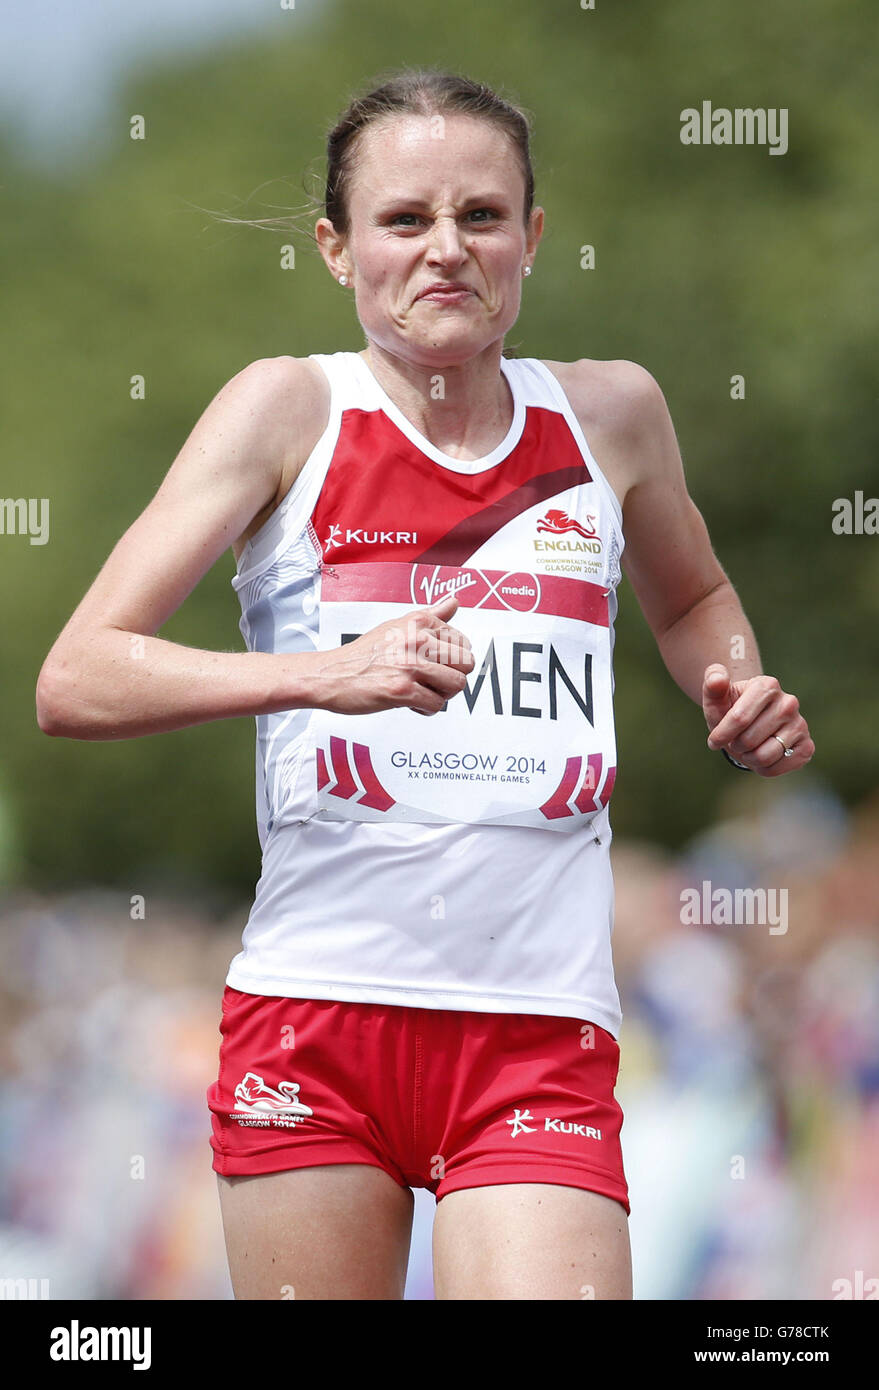 Englands Louise Damen während des Men's Marathon während der Commonwealth Games 2014 in Glasgow während der Commonwealth Games 2014 in Glasgow. Stockfoto